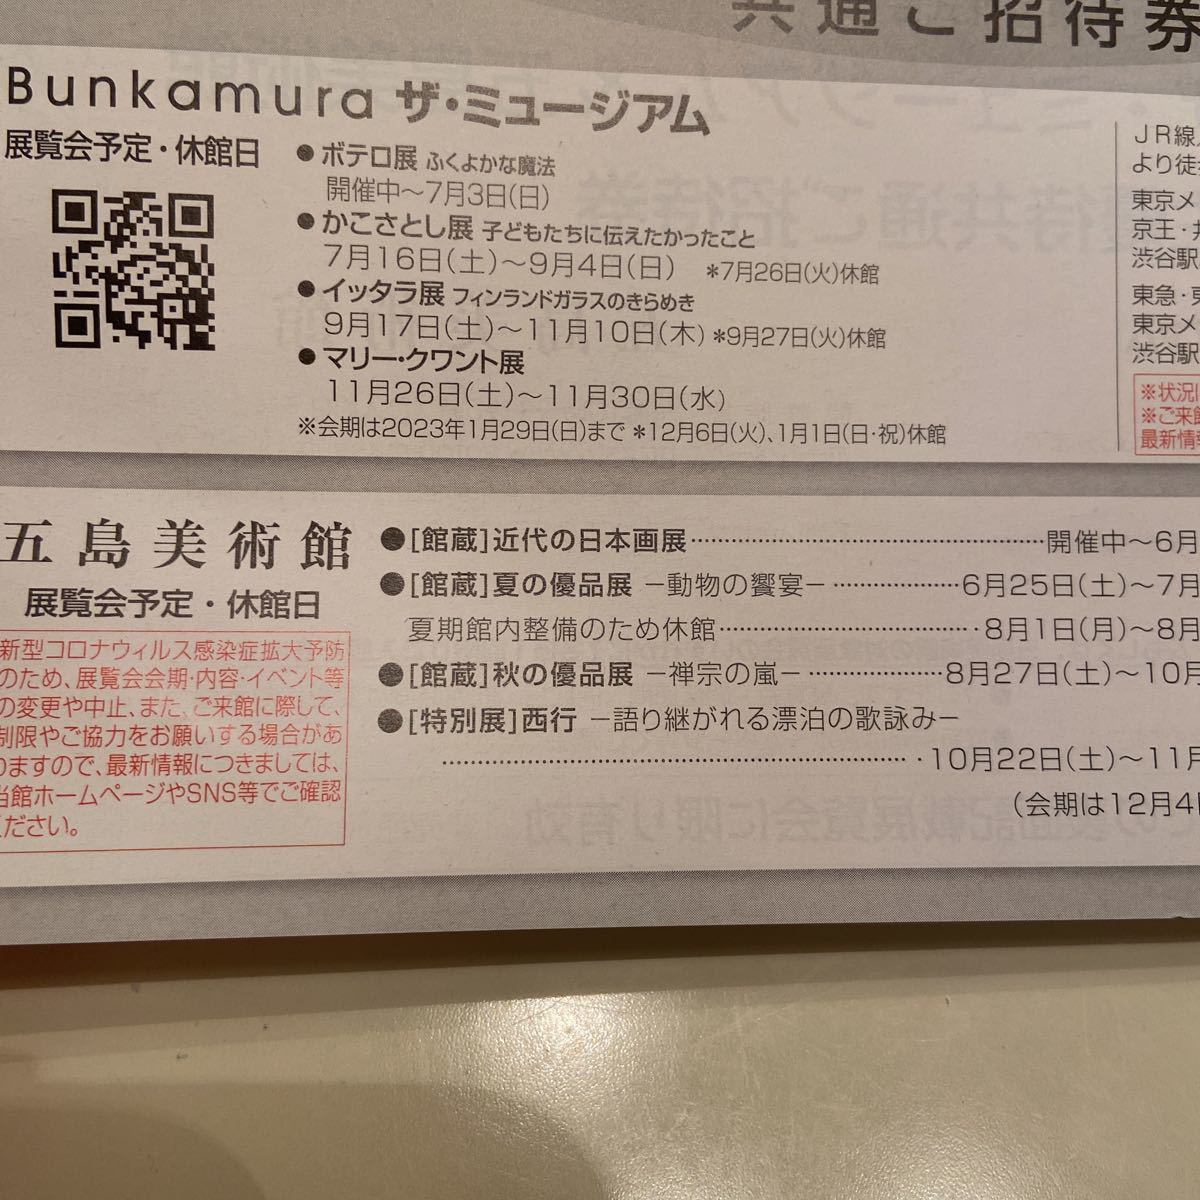 ザミュージアム Bunkamura 株主優待 ご招待券　二枚組セット_画像4